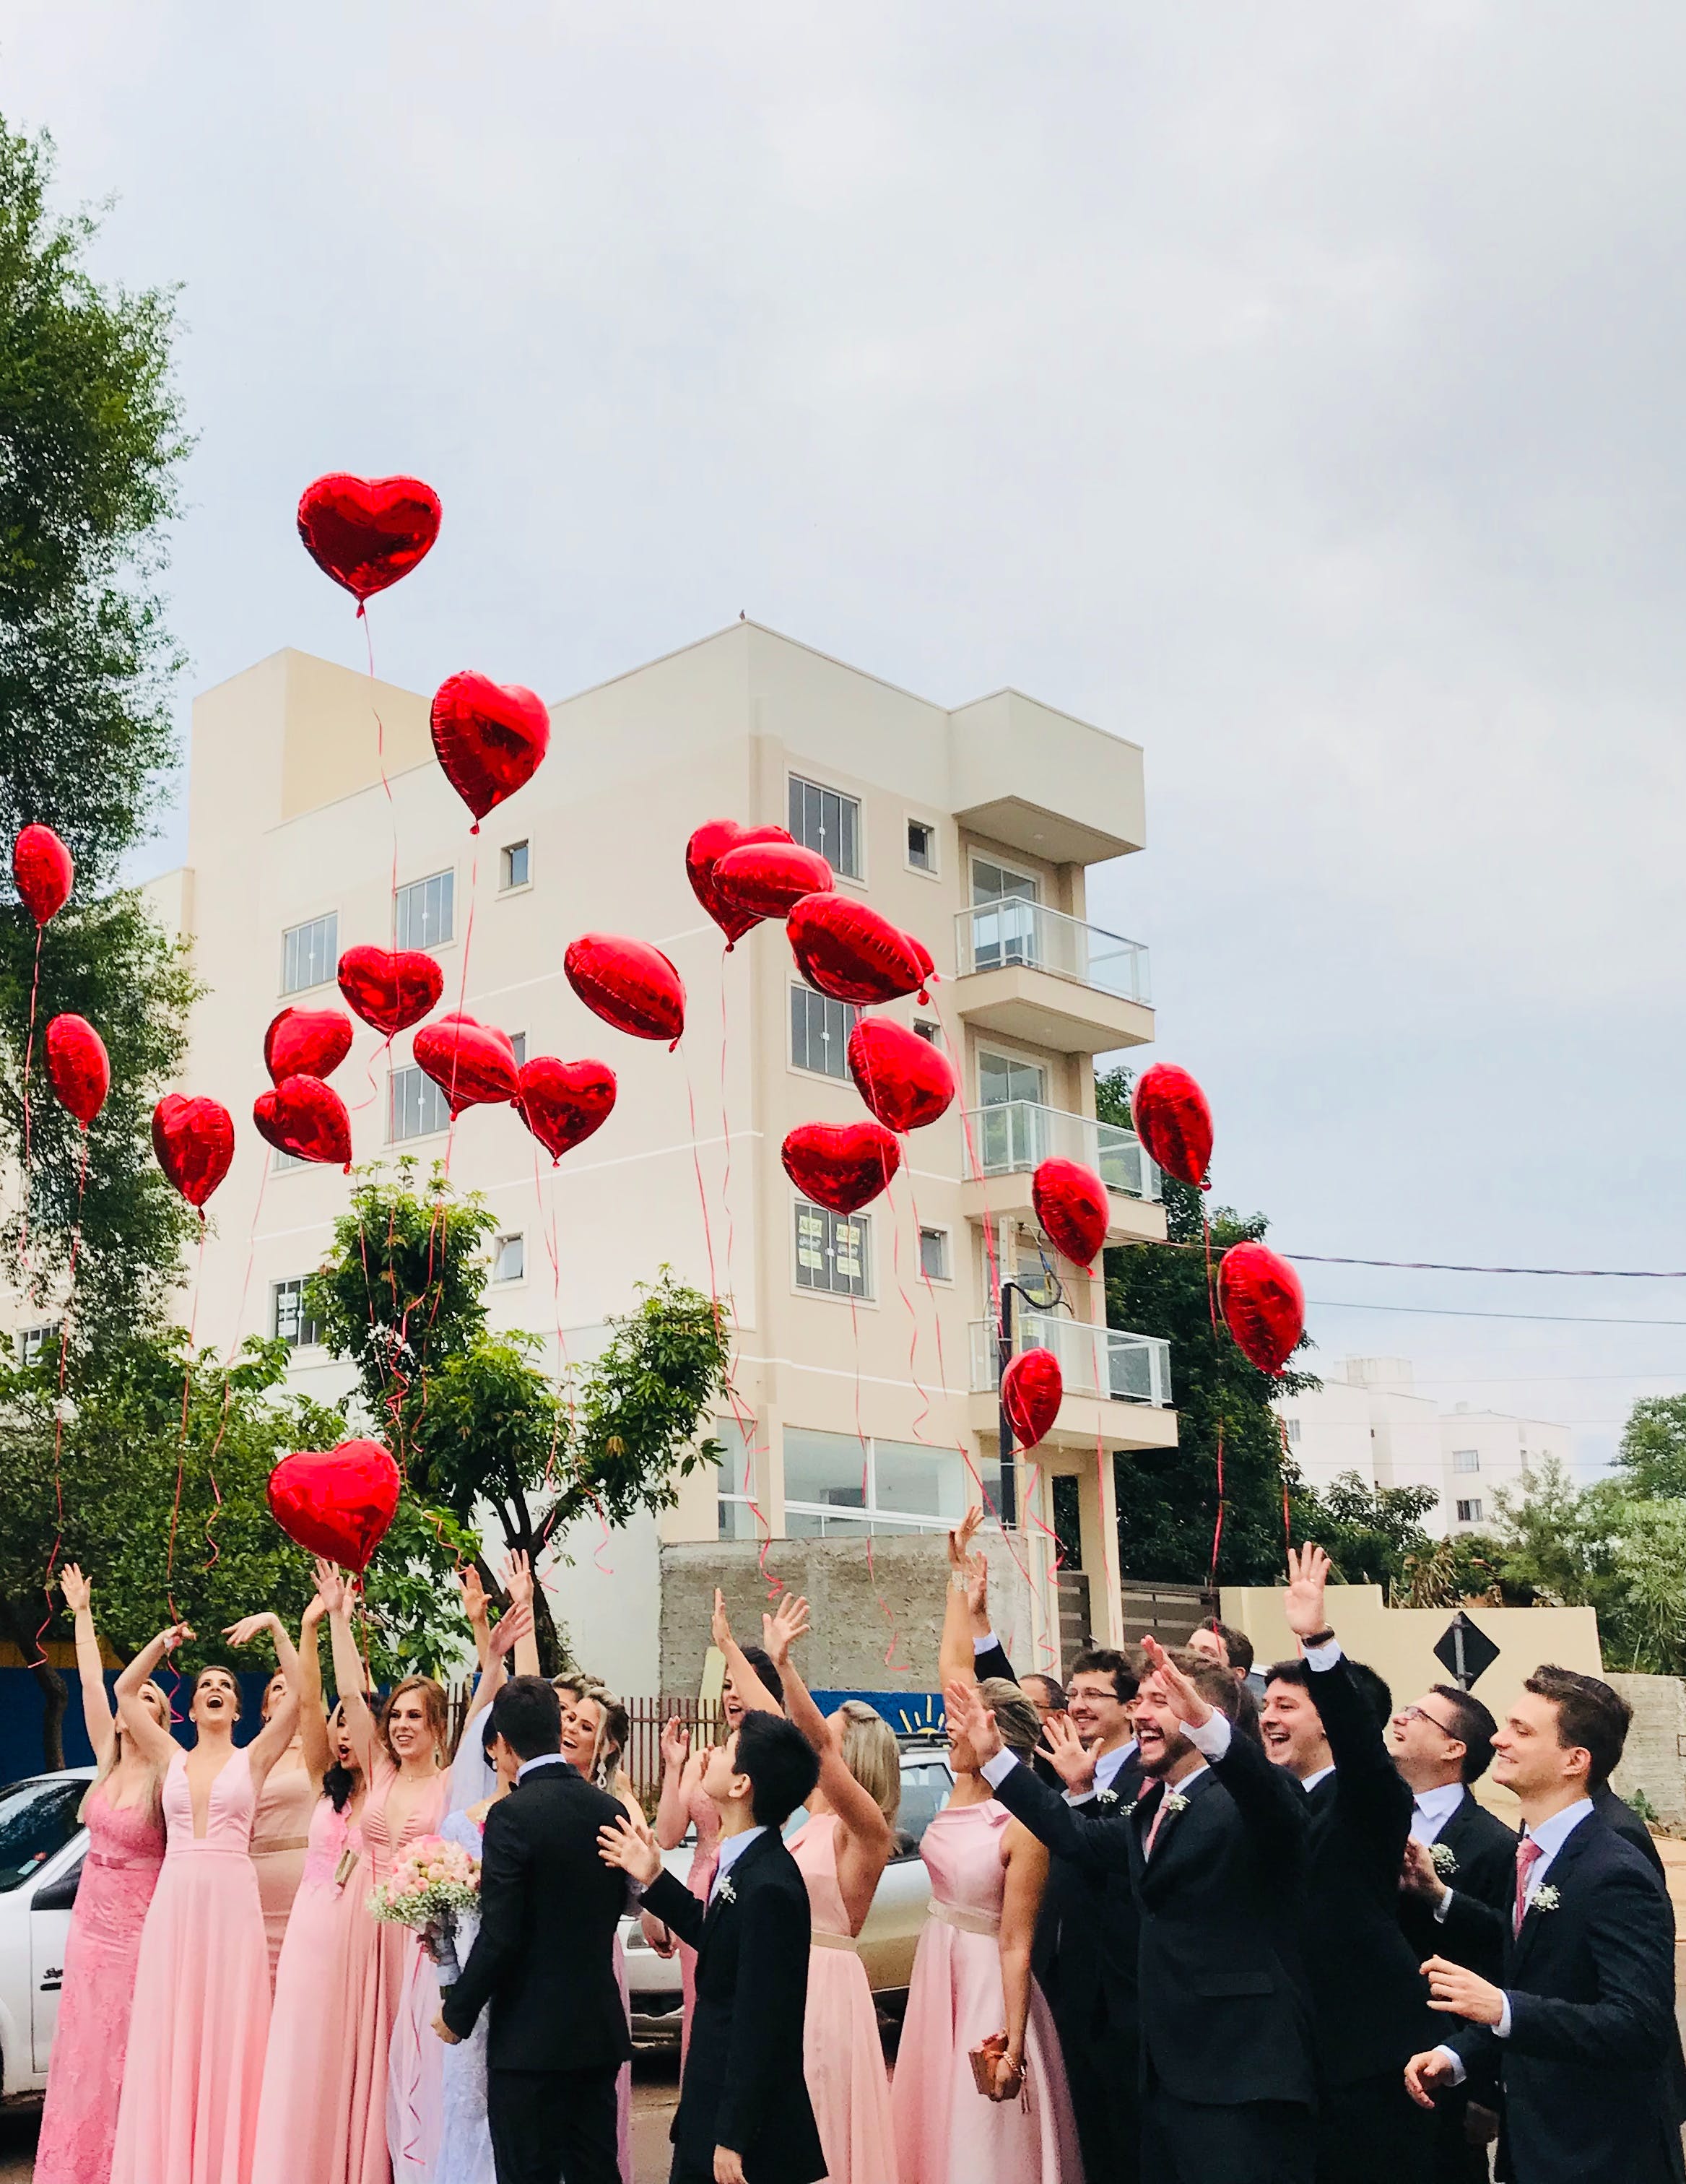 Une fête de mariage avec des ballons en forme de cœur lâchés dans la rue | Source : Pexels